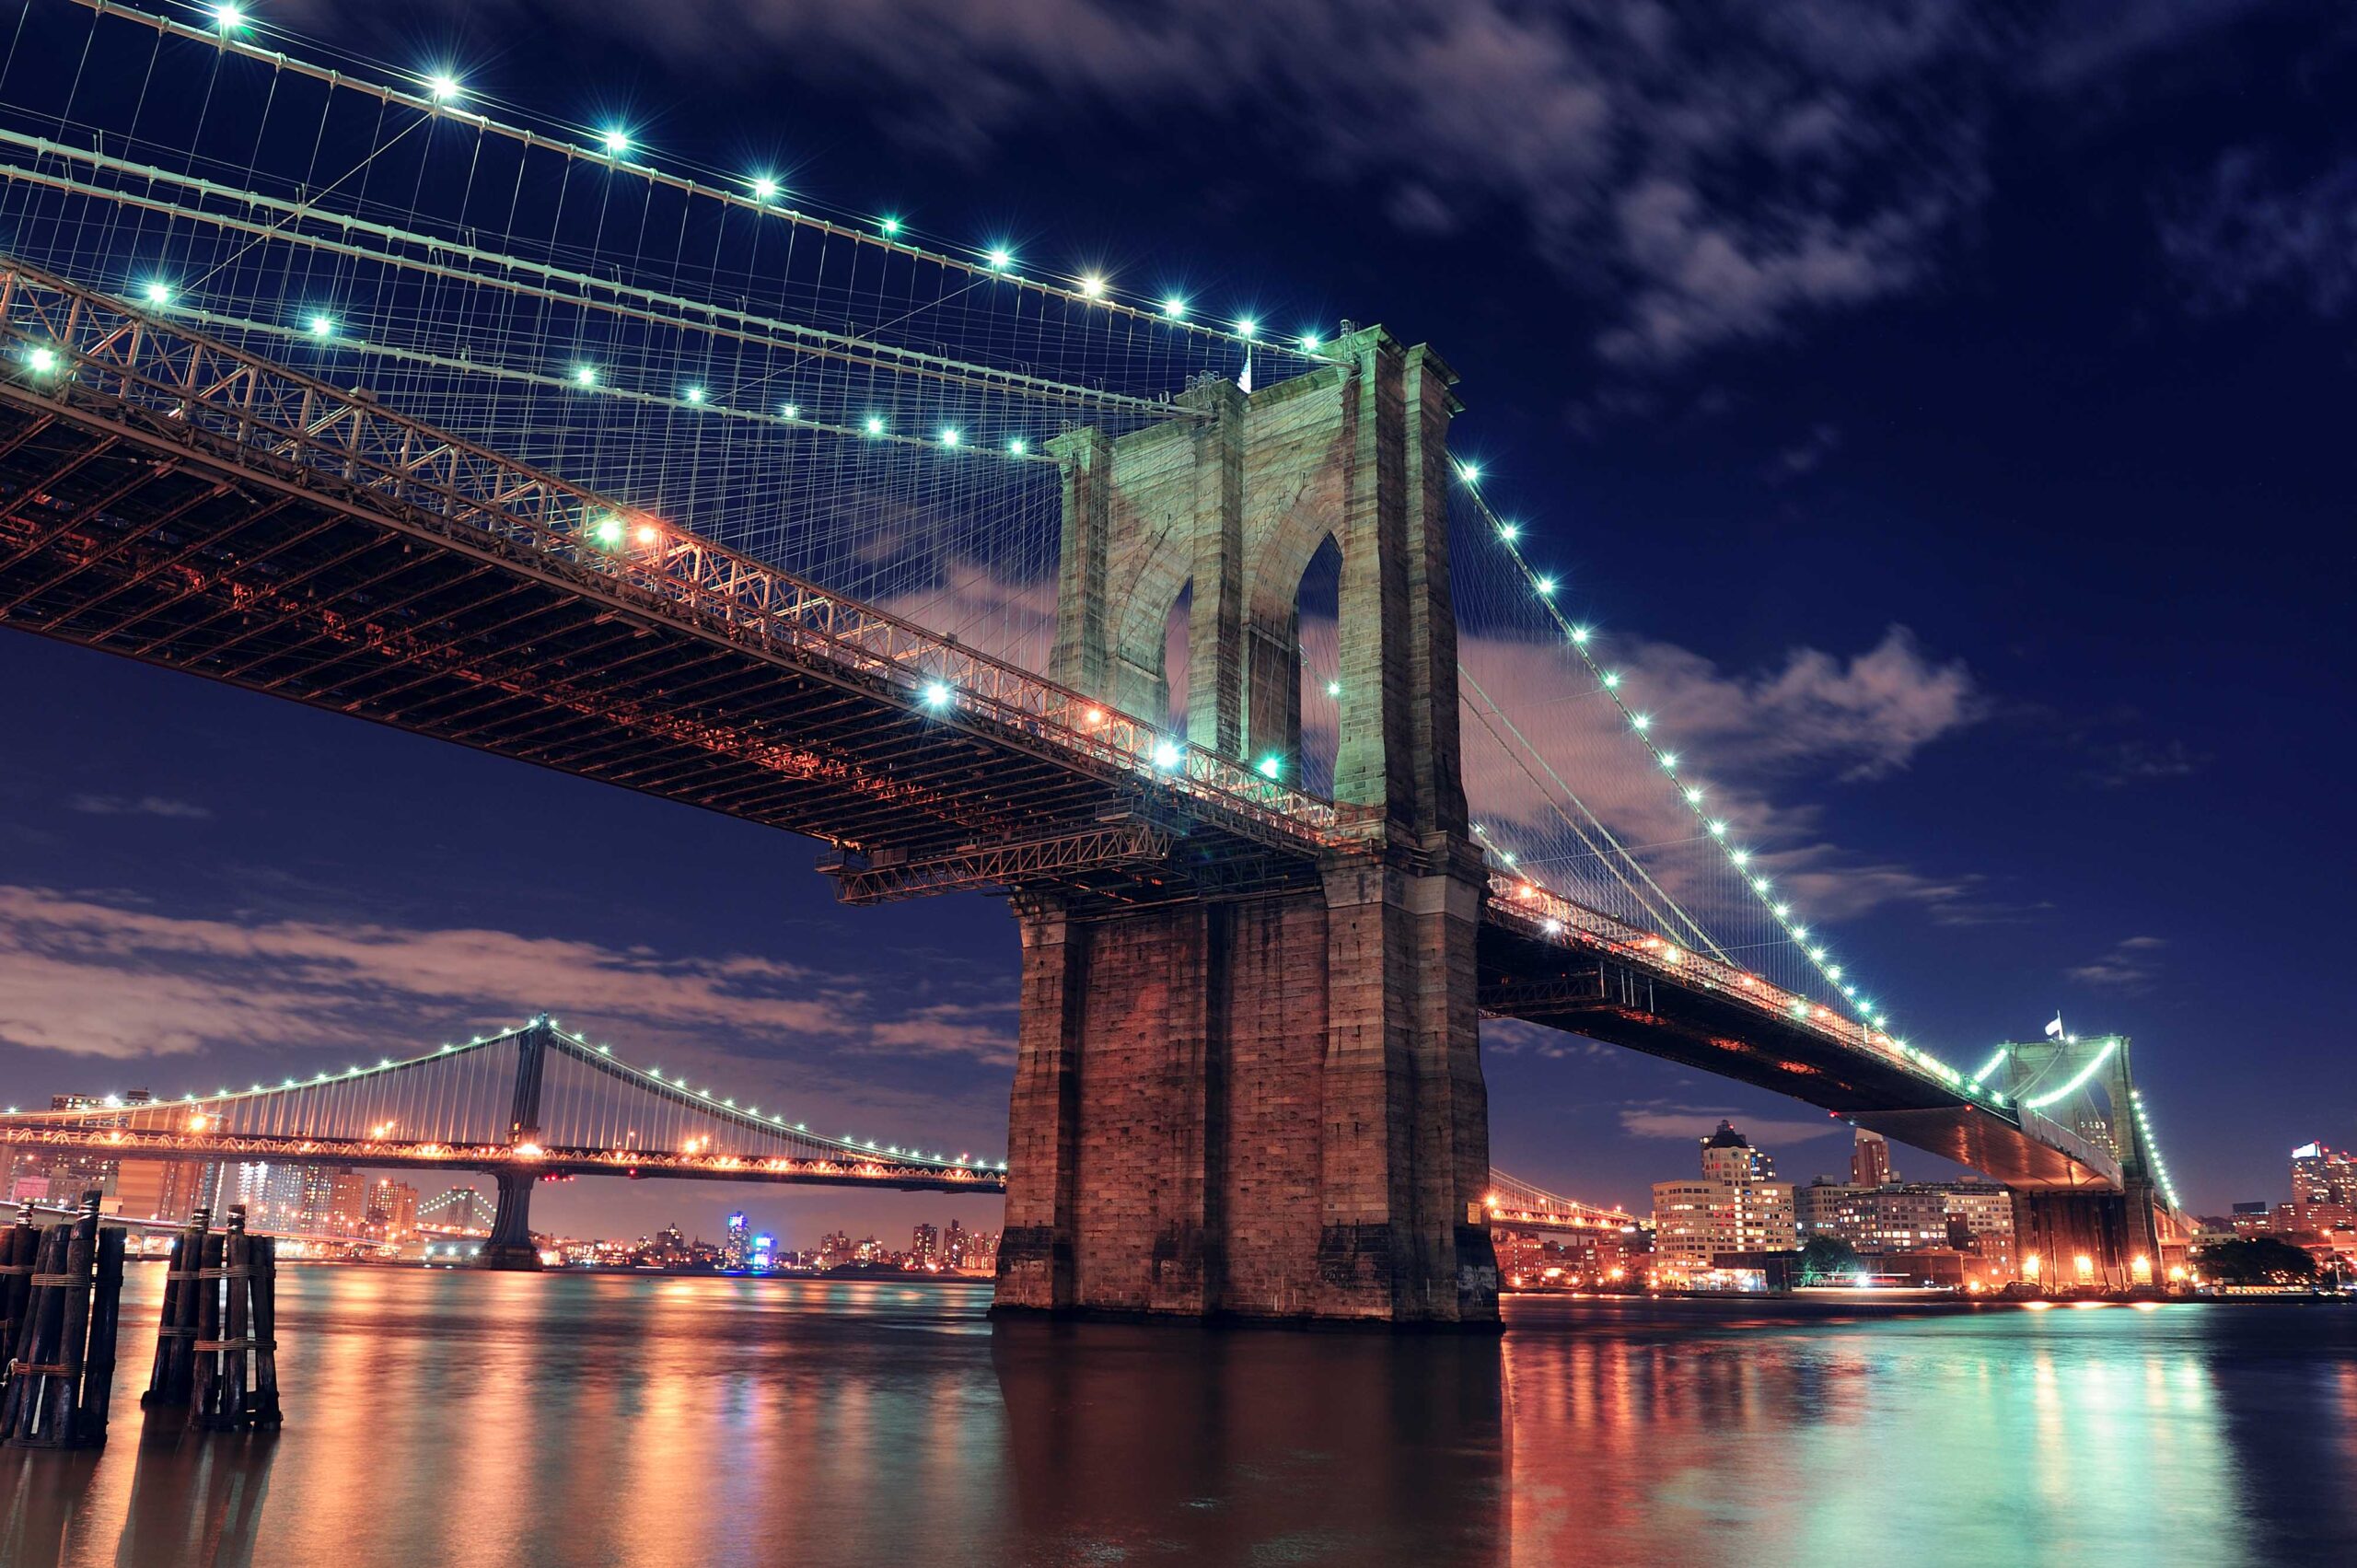 สะพานบรุกลิน - Brooklyn Bridge, New York